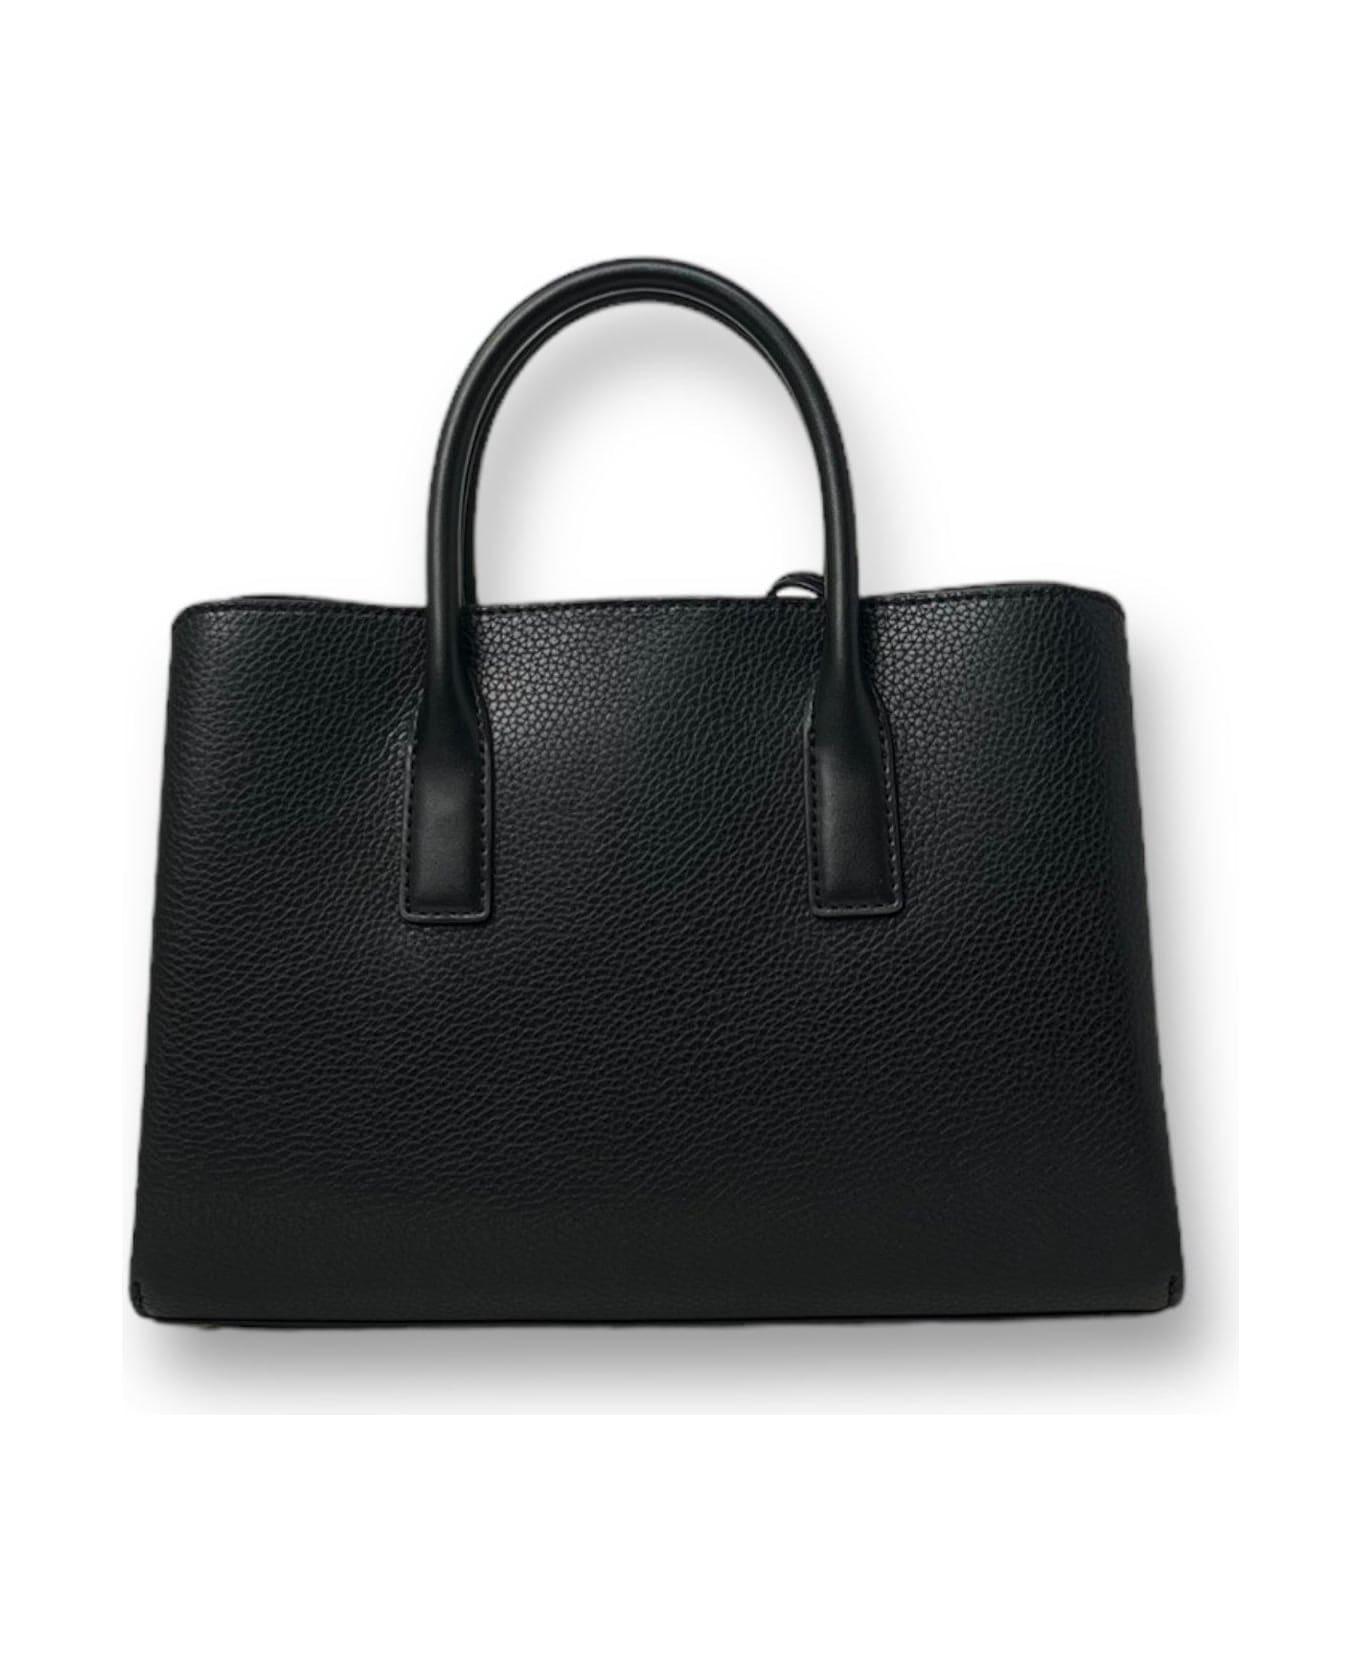 Michael Kors Ruthie Medium Top Handle Bag - Black